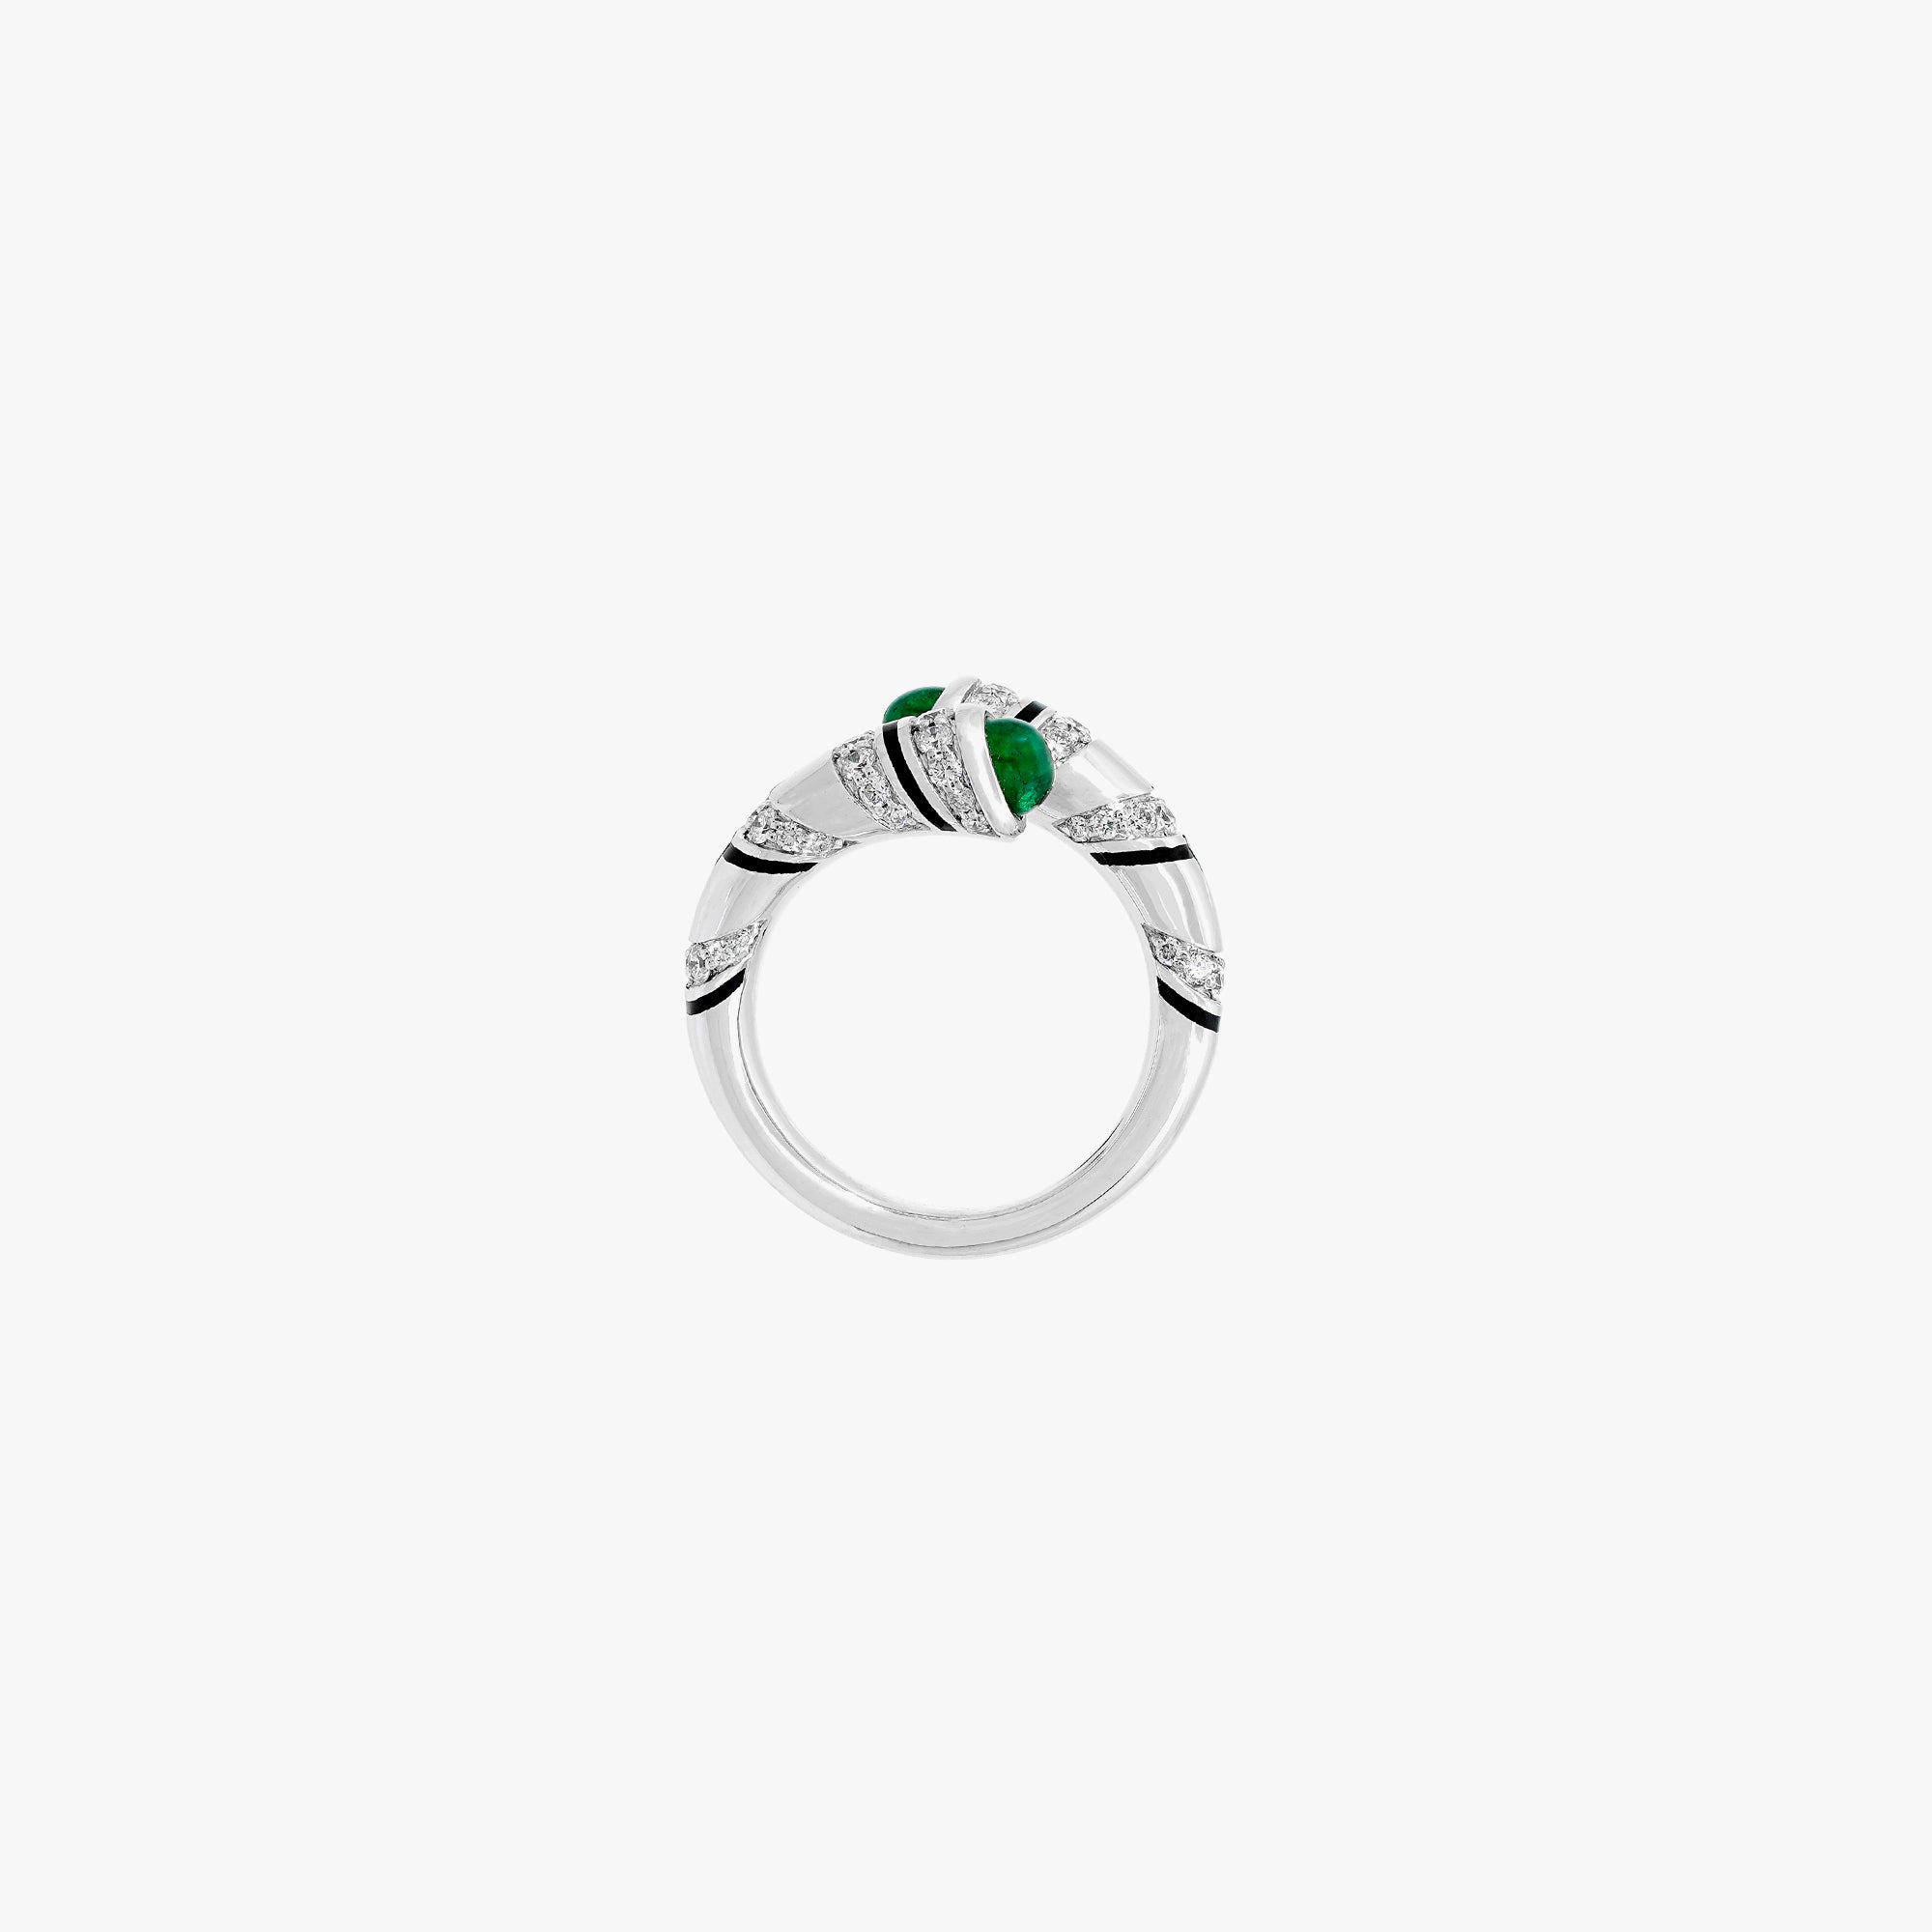 18k Mushabbak ring in white gold with diamonds and emeralds